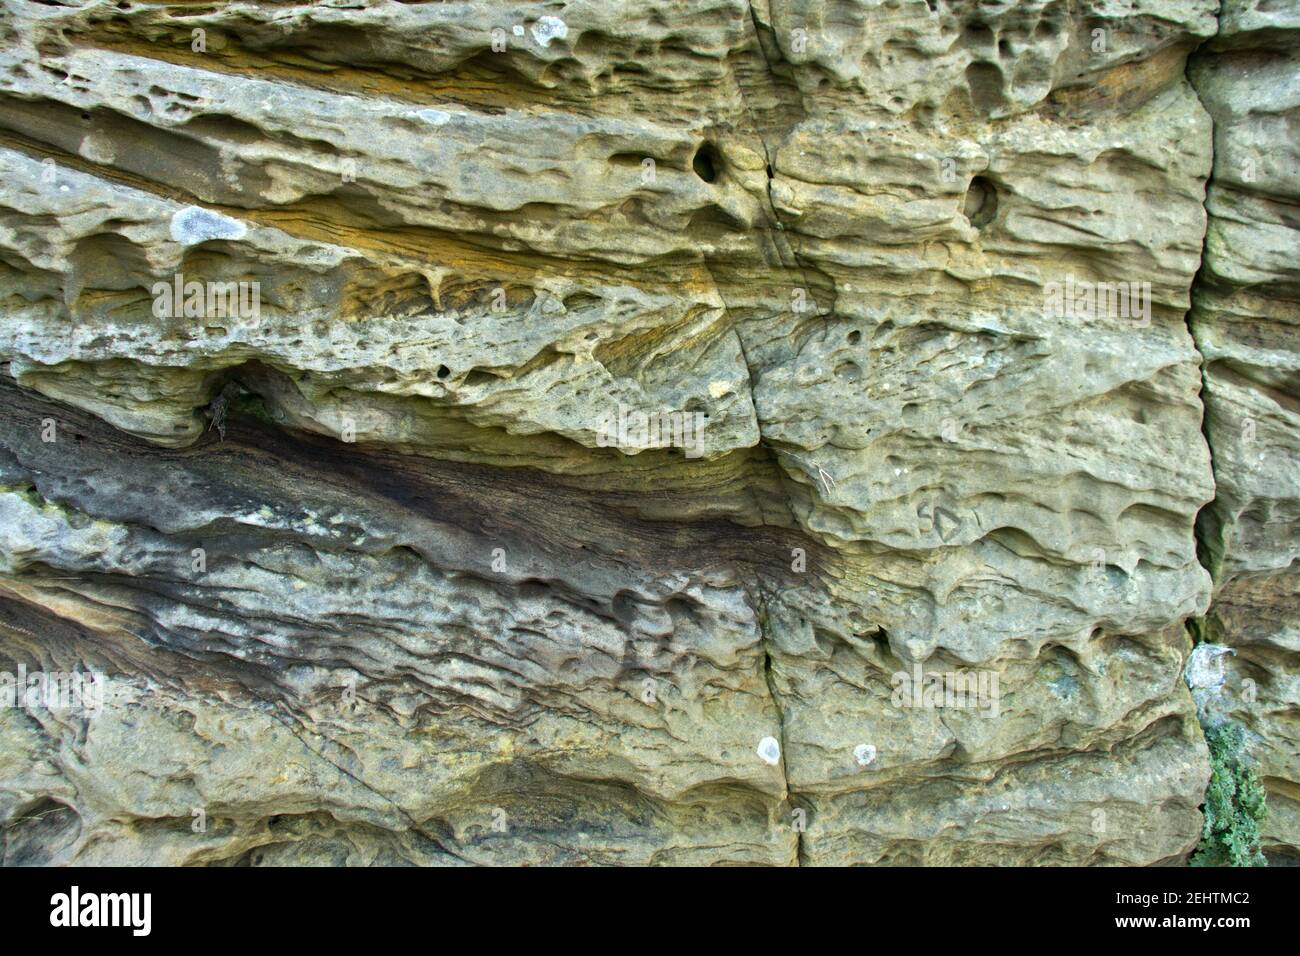 Studiare le strutture in strati rocciosi può darci una chiara indicazione di habitat antichi. Queste sono pietre di sabbia a croce del periodo Jurassico Foto Stock